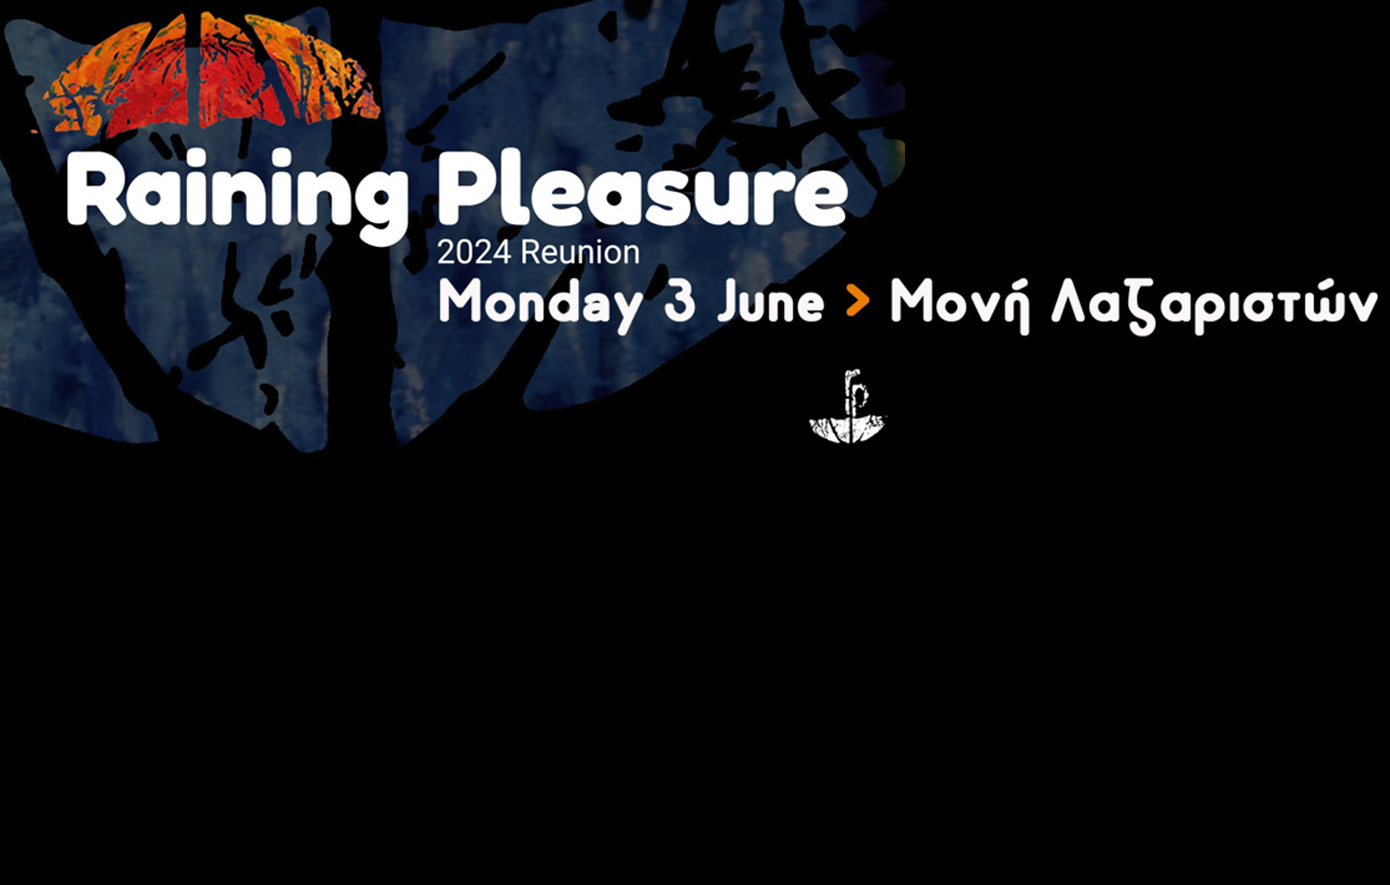 Ακυρώνεται η αποψινή συναυλία των Raining Pleasure στο Φεστιβάλ Μονής Λαζαριστών